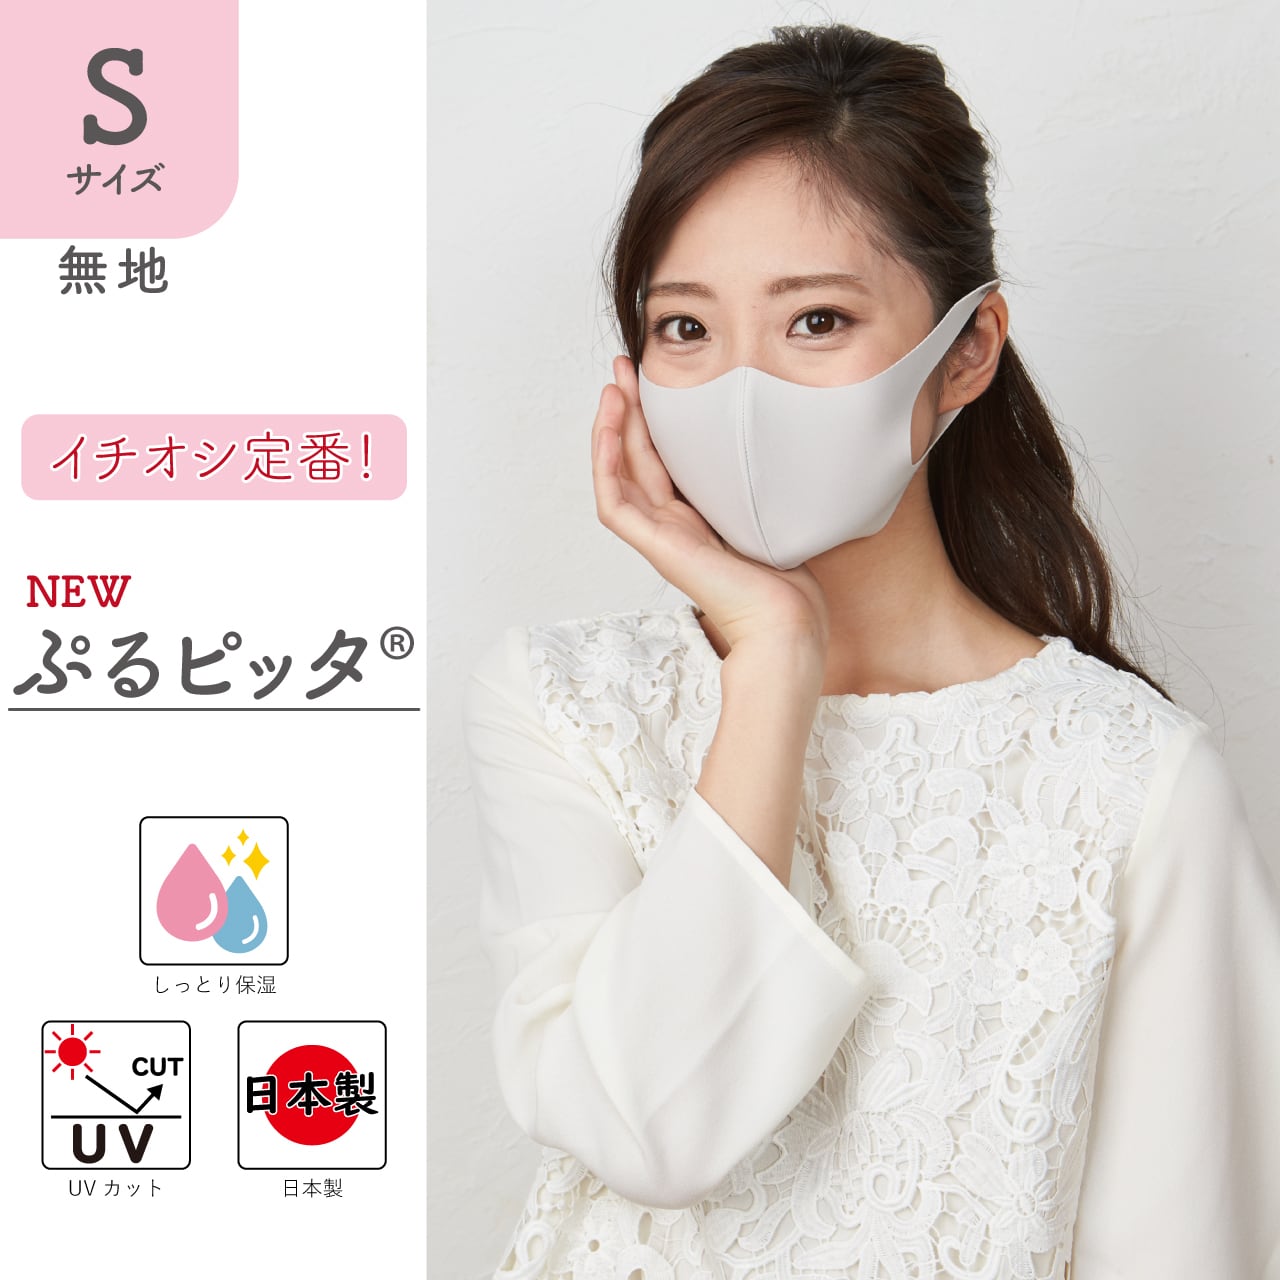 新・ぷるピッタ®マスク]Sサイズ 2枚組 しっとり保湿・UVカット・ワイヤー同封 日本製 #120 ラ ルーチェ マキムラグループ